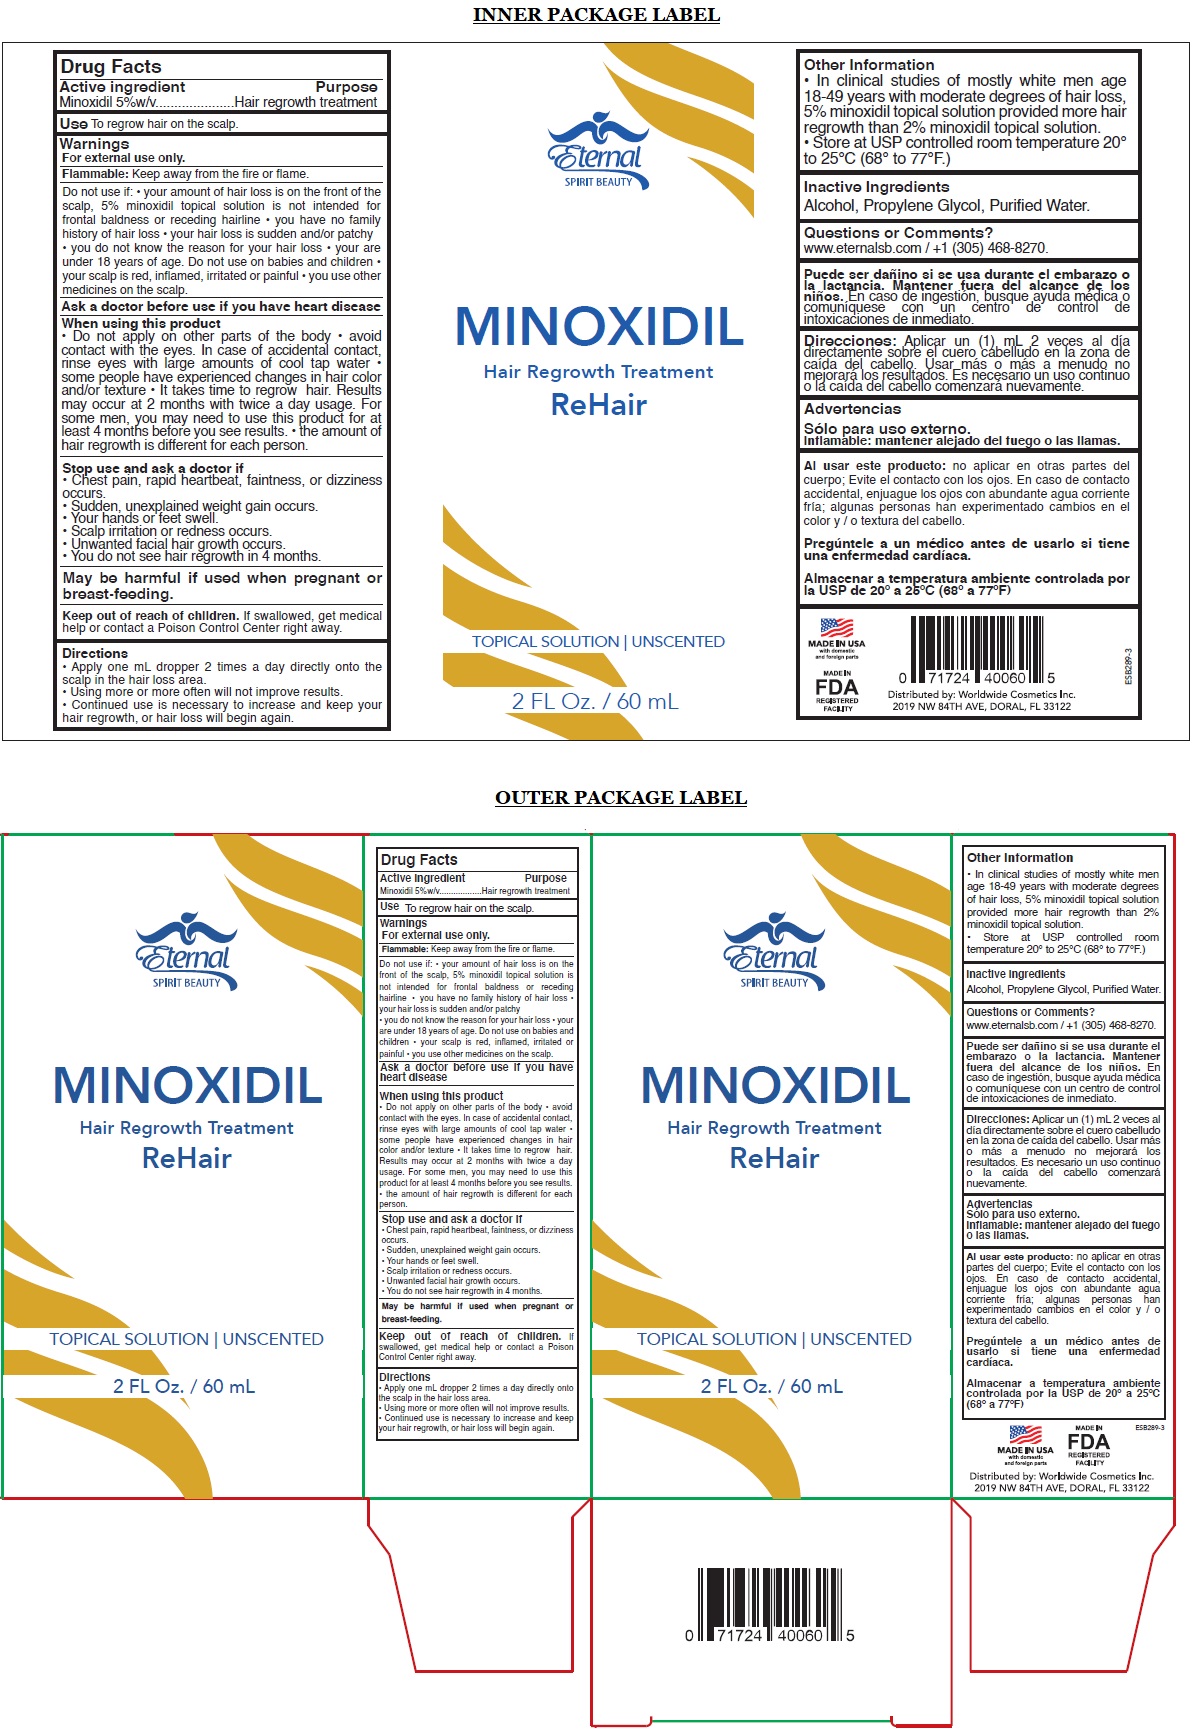 MINOXIDIL-201